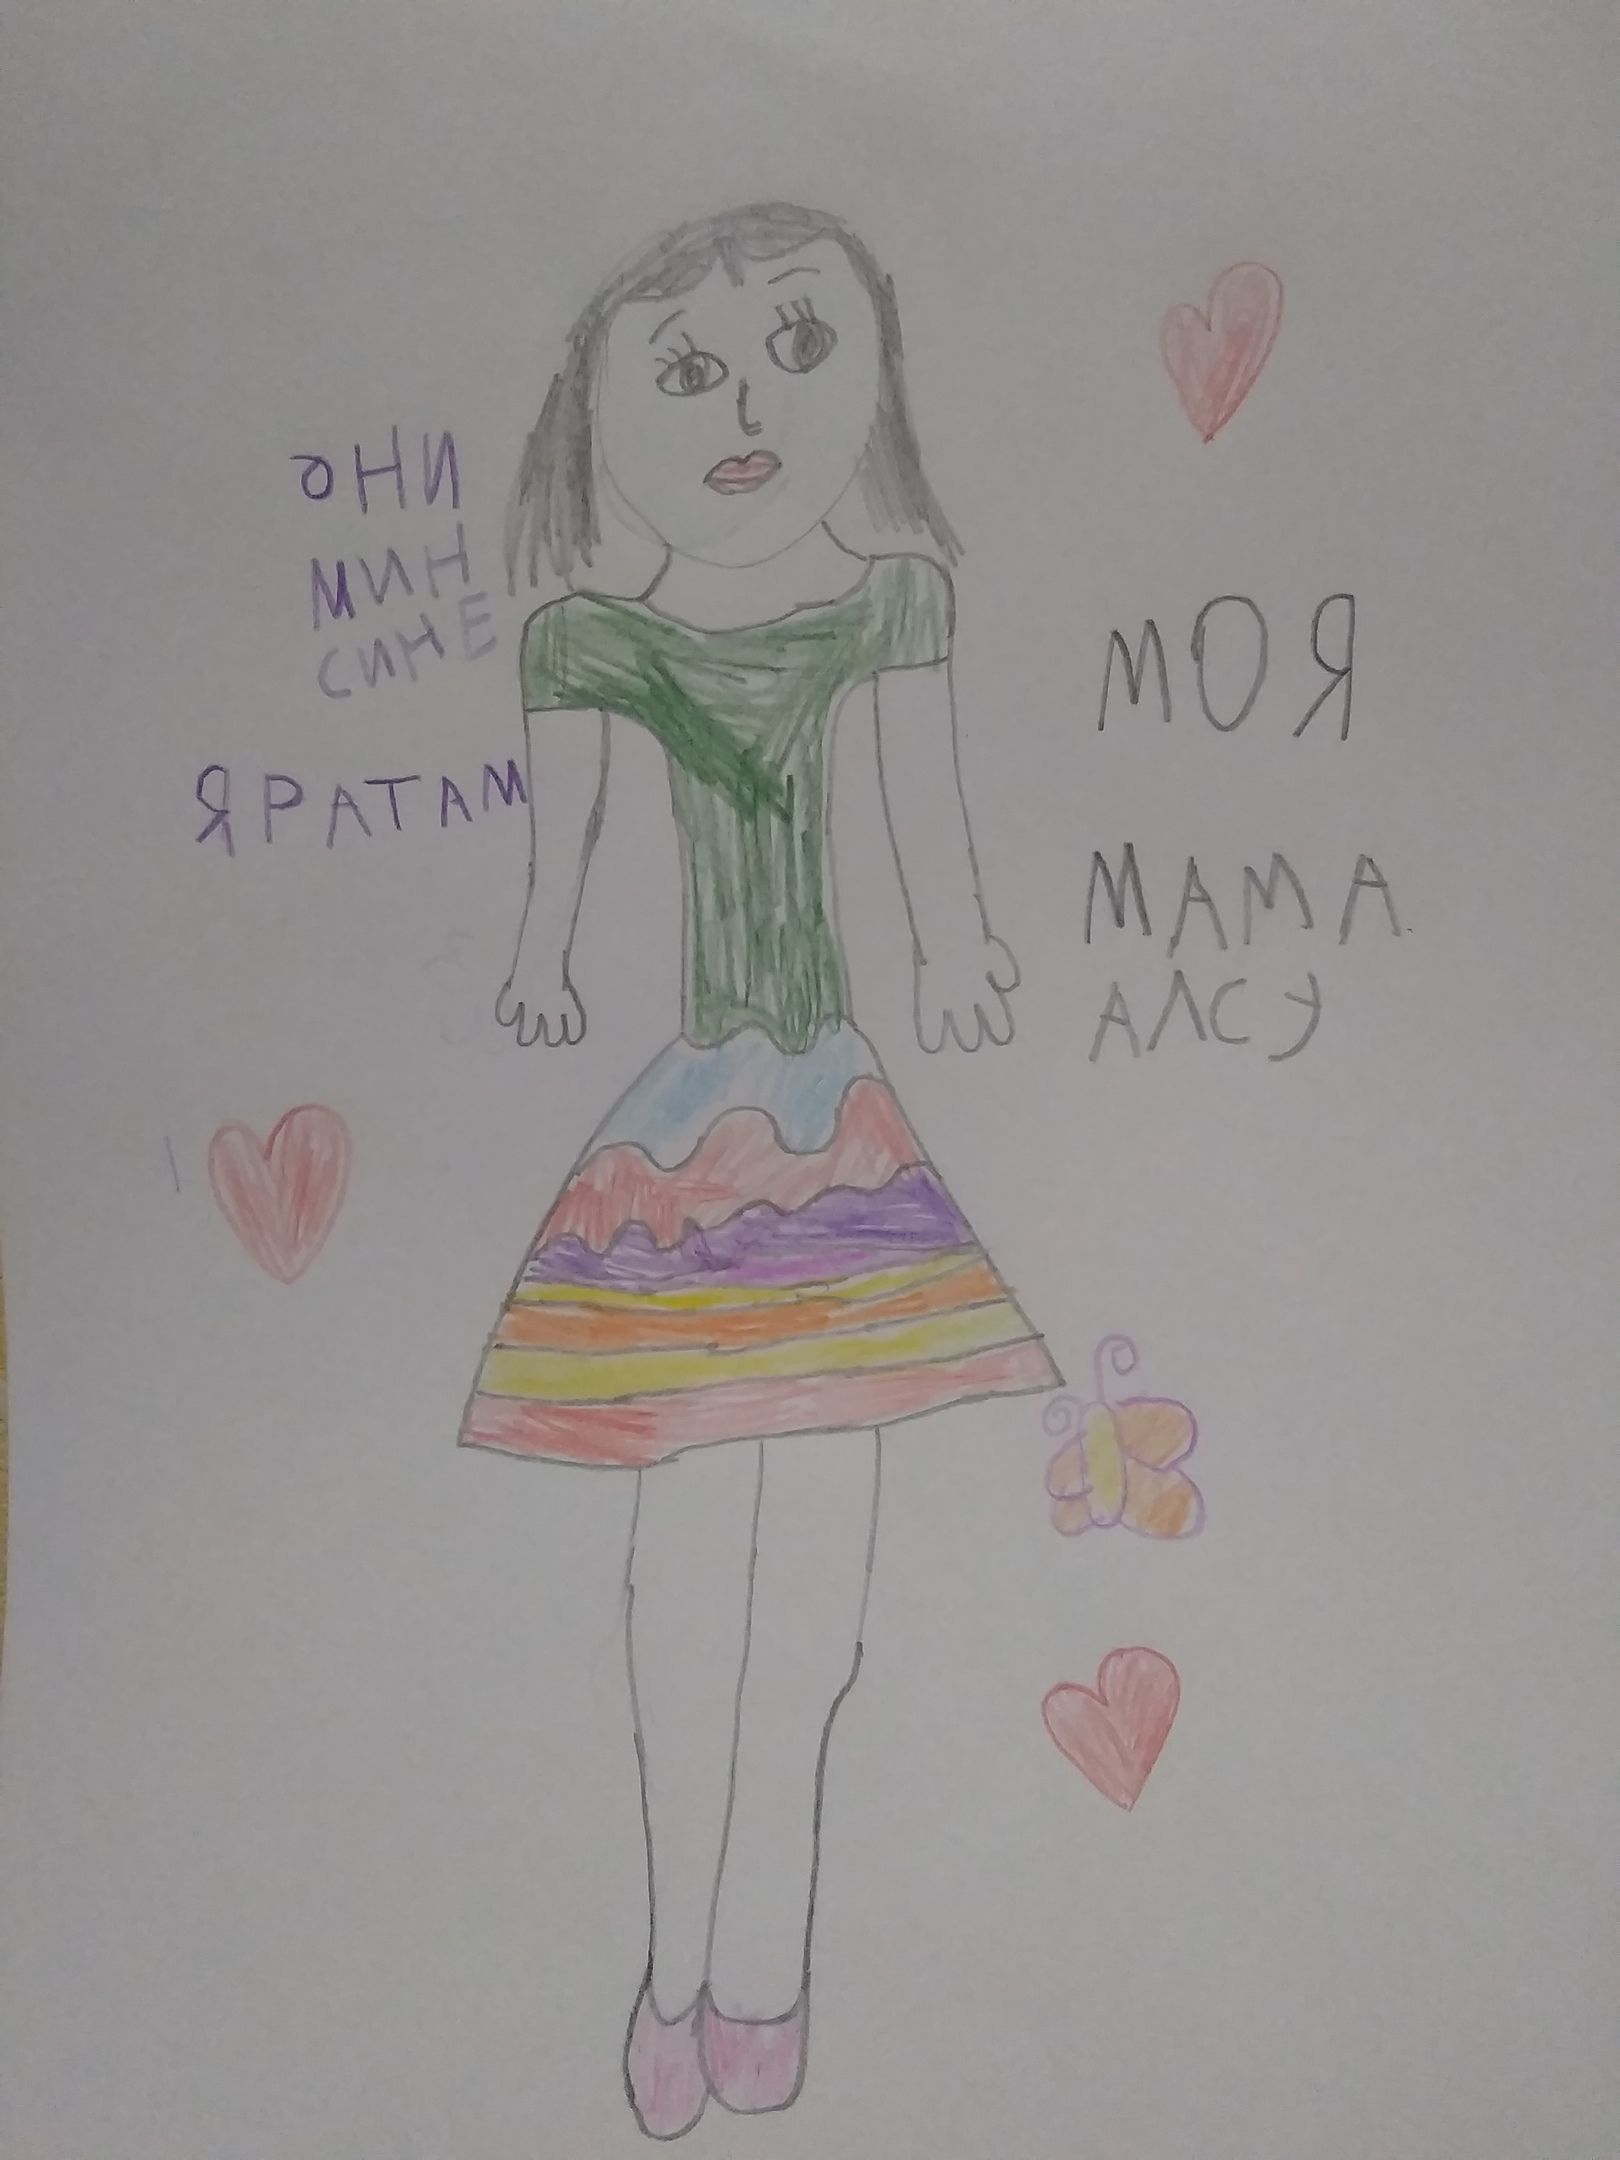 Первые рисунки для участия в конкурсе "Моя мама лучше всех" получила редакция